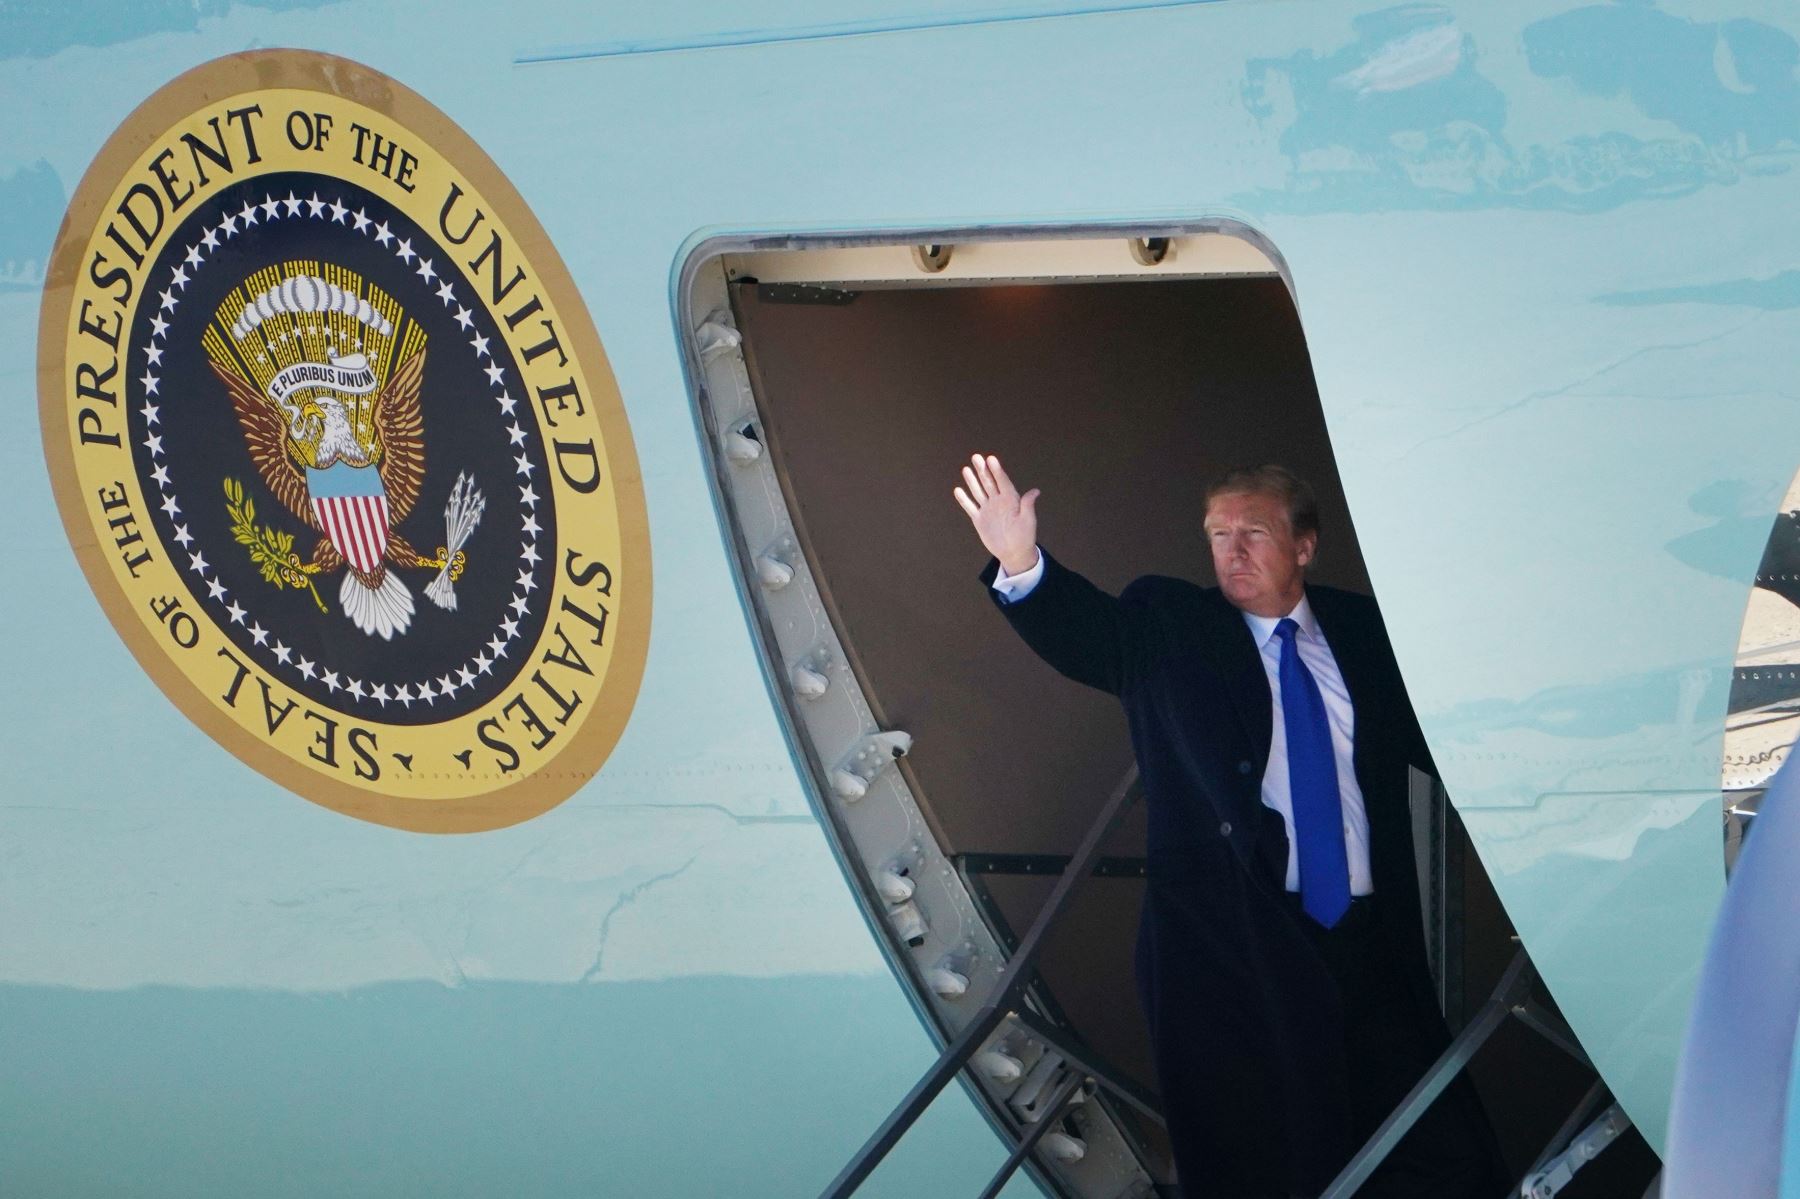 El presidente de los Estados Unidos, Donald Trump, aborda Air Force One antes de partir de la base conjunta Andrews en Maryland. Foto: AFP